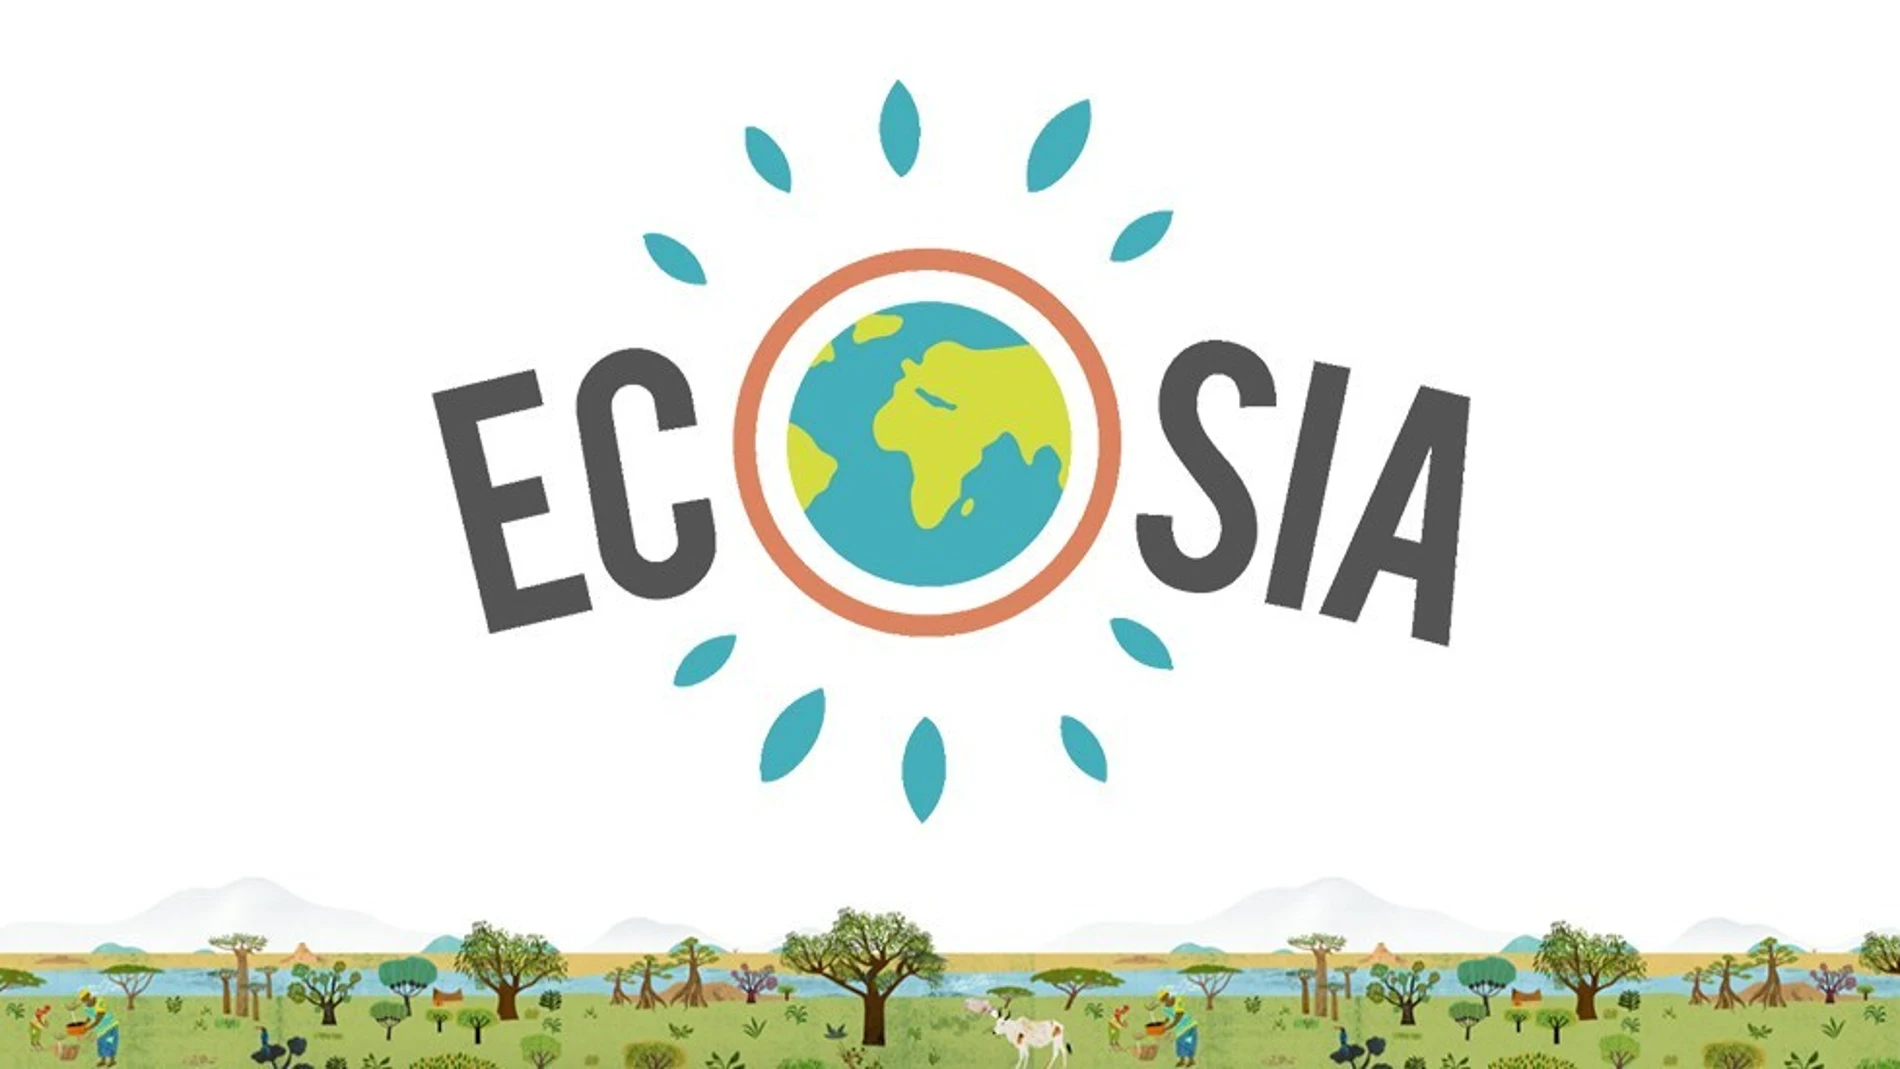 Ecosia, el buscador que planta árboles